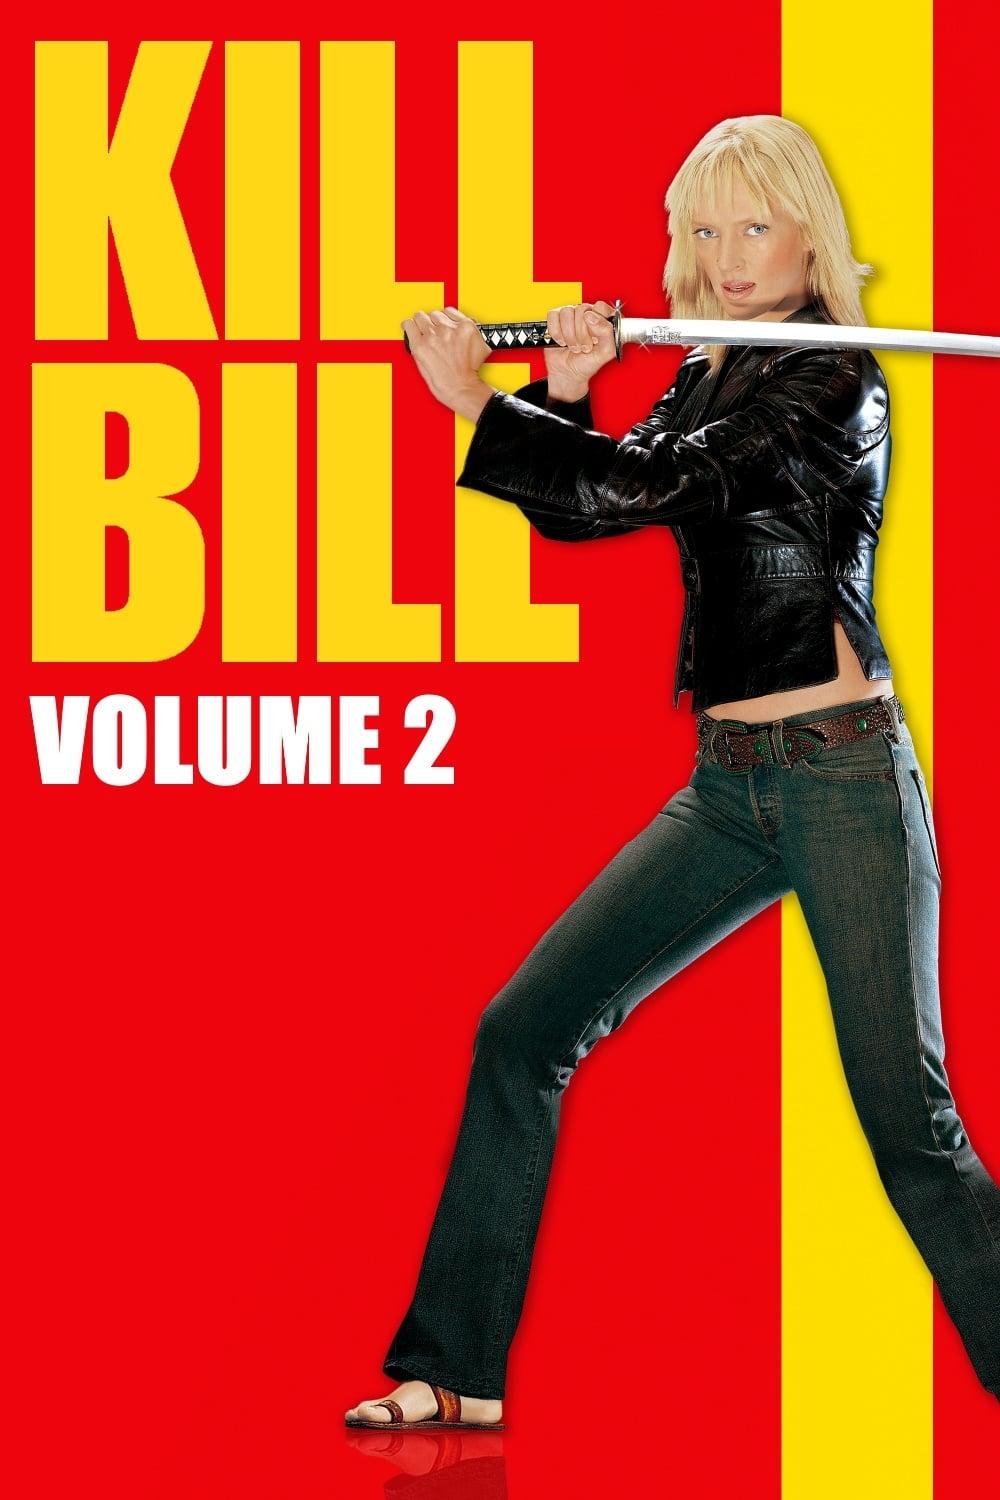 Kill Bill: Vol. 2 poster